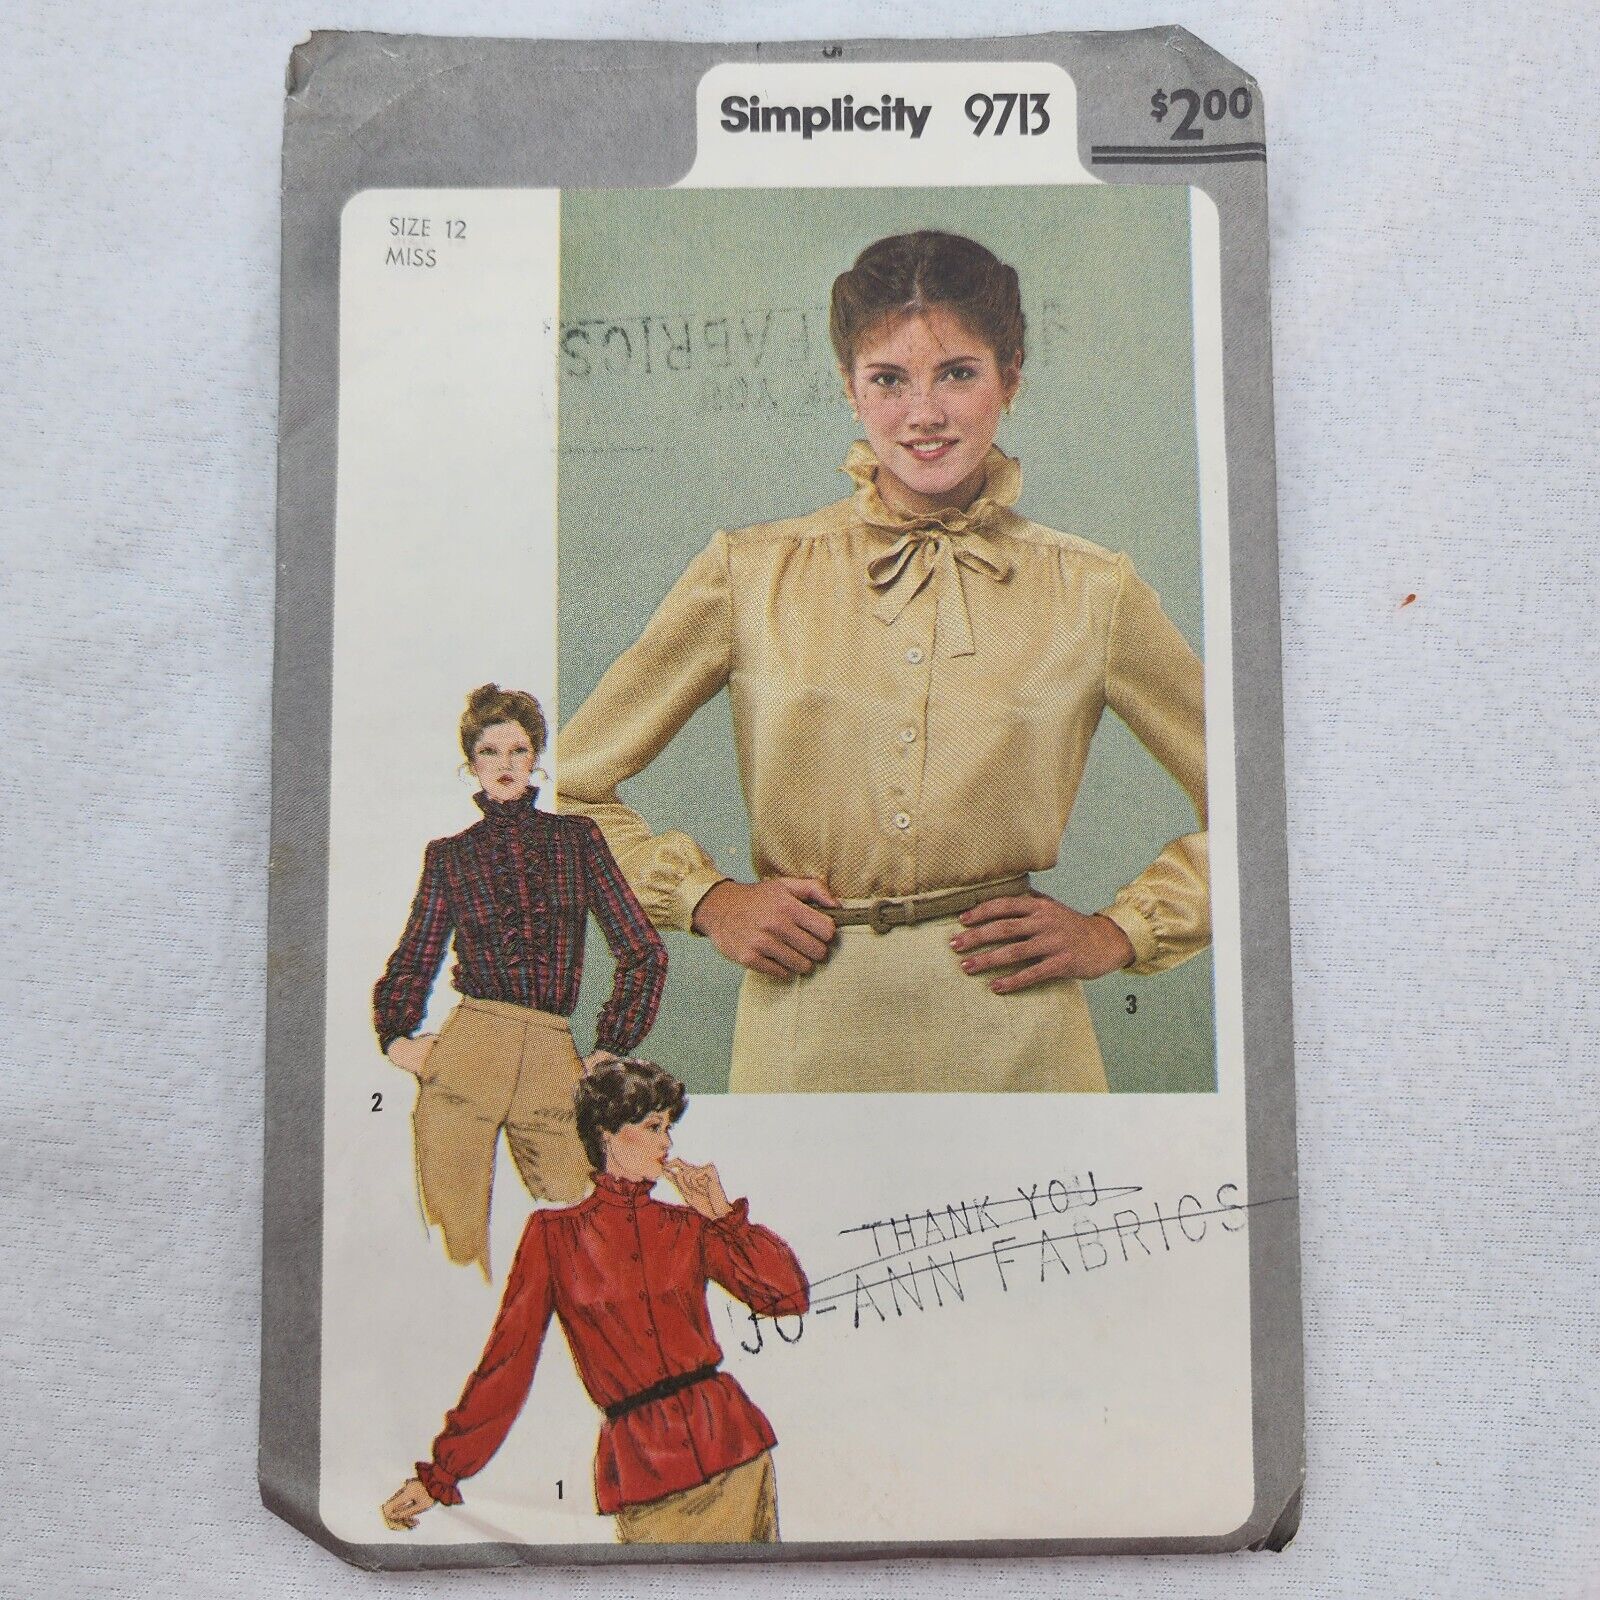 Vintage 1980s Simplicity 9713 Peasant Top SZ 12 Clothes Cottagecore Ruffles CUT